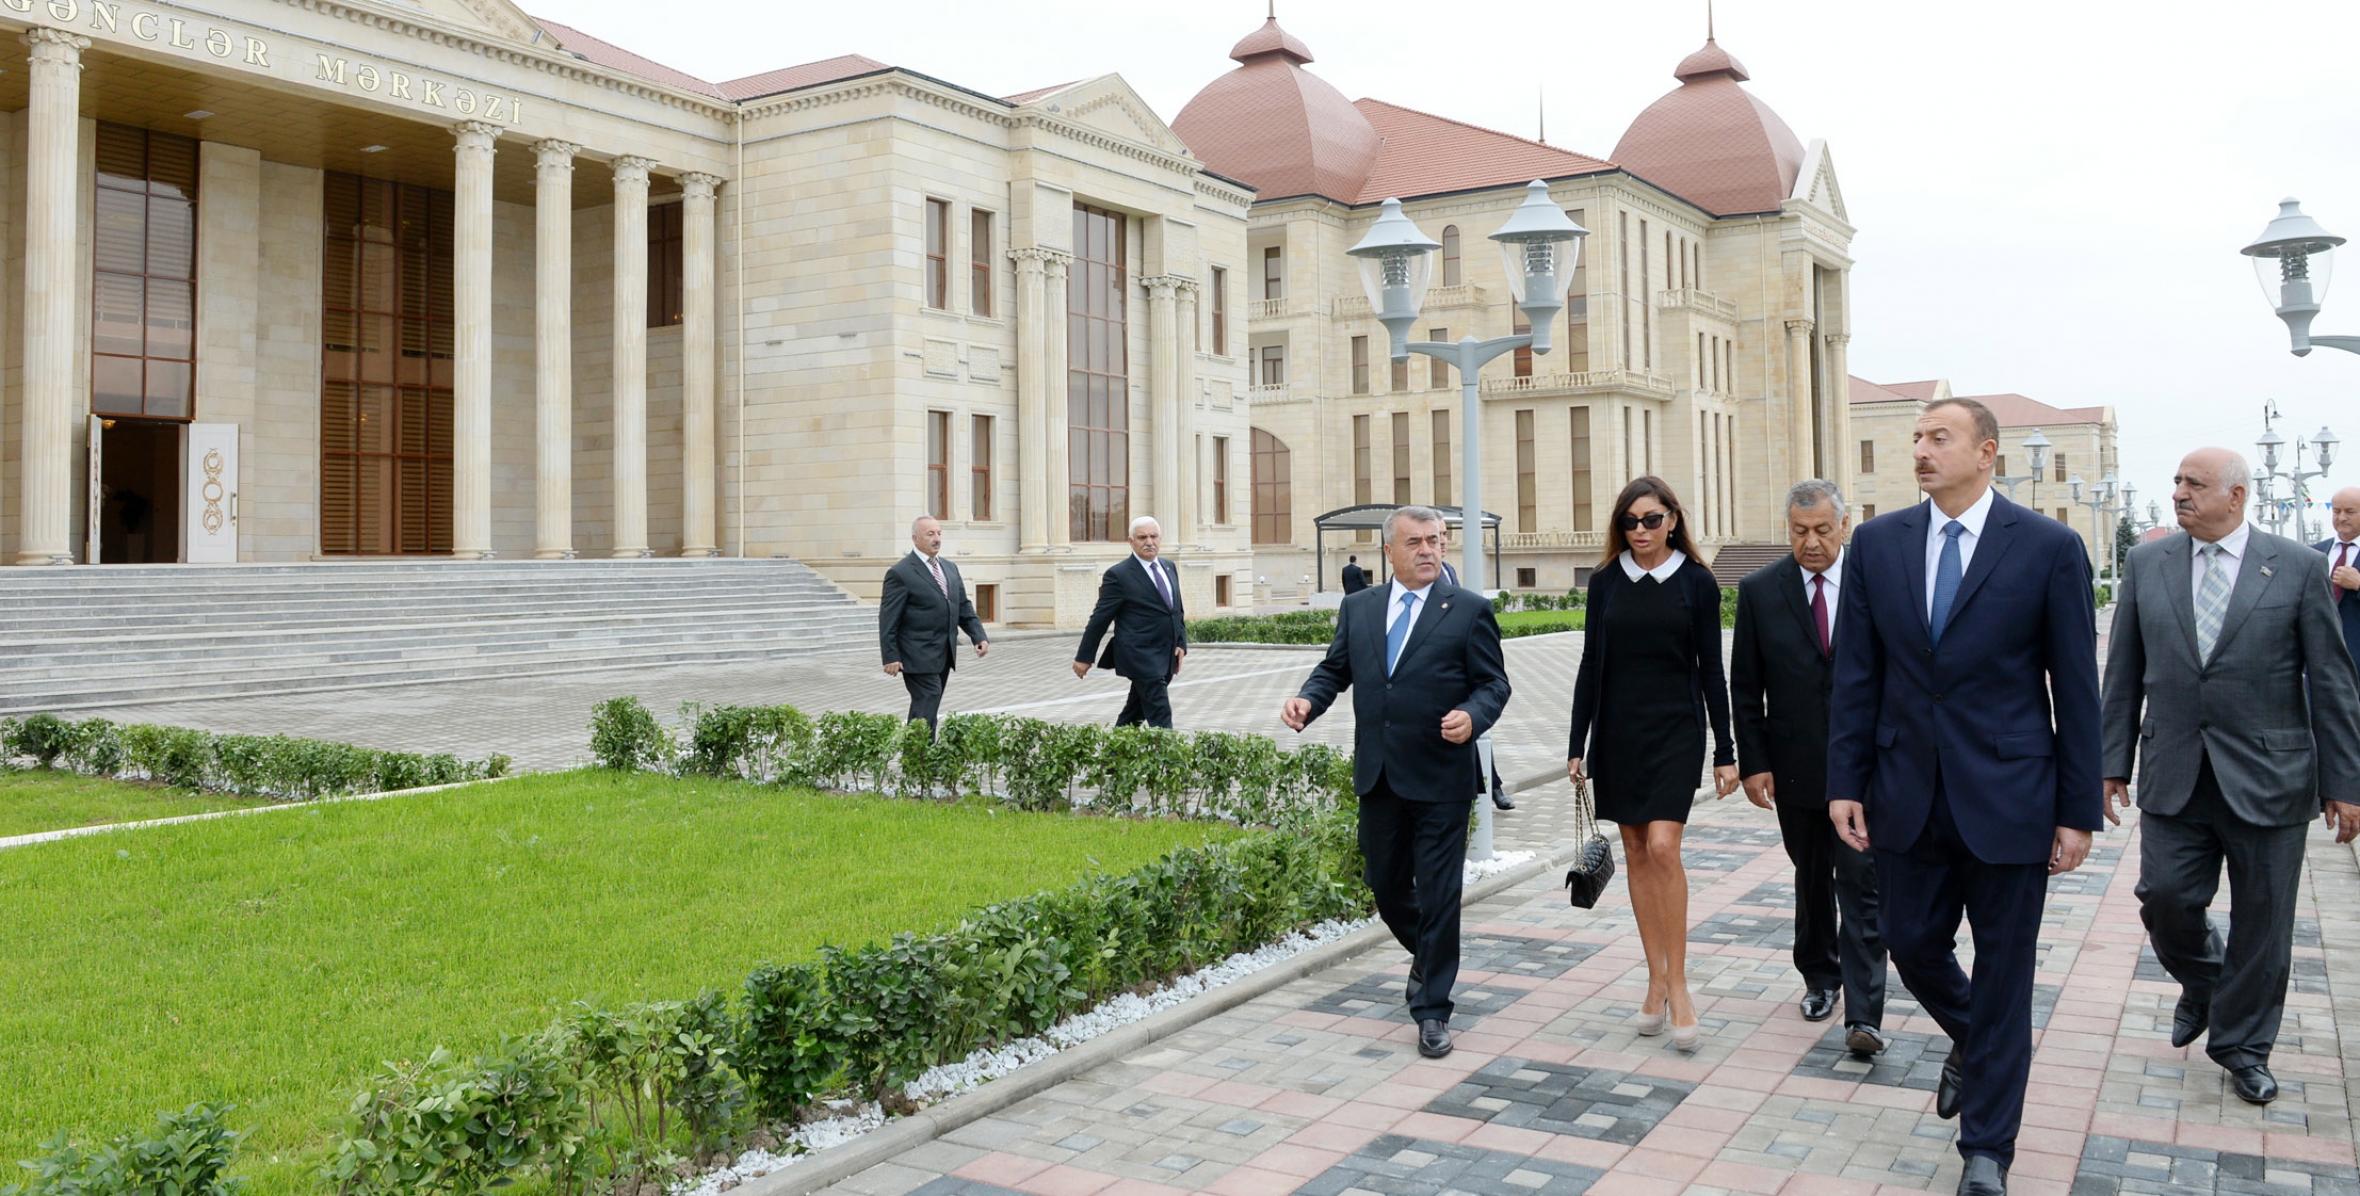 Ильхам Алиев в рамках поездки в Губинский район принял участие в открытии Центра молодежи